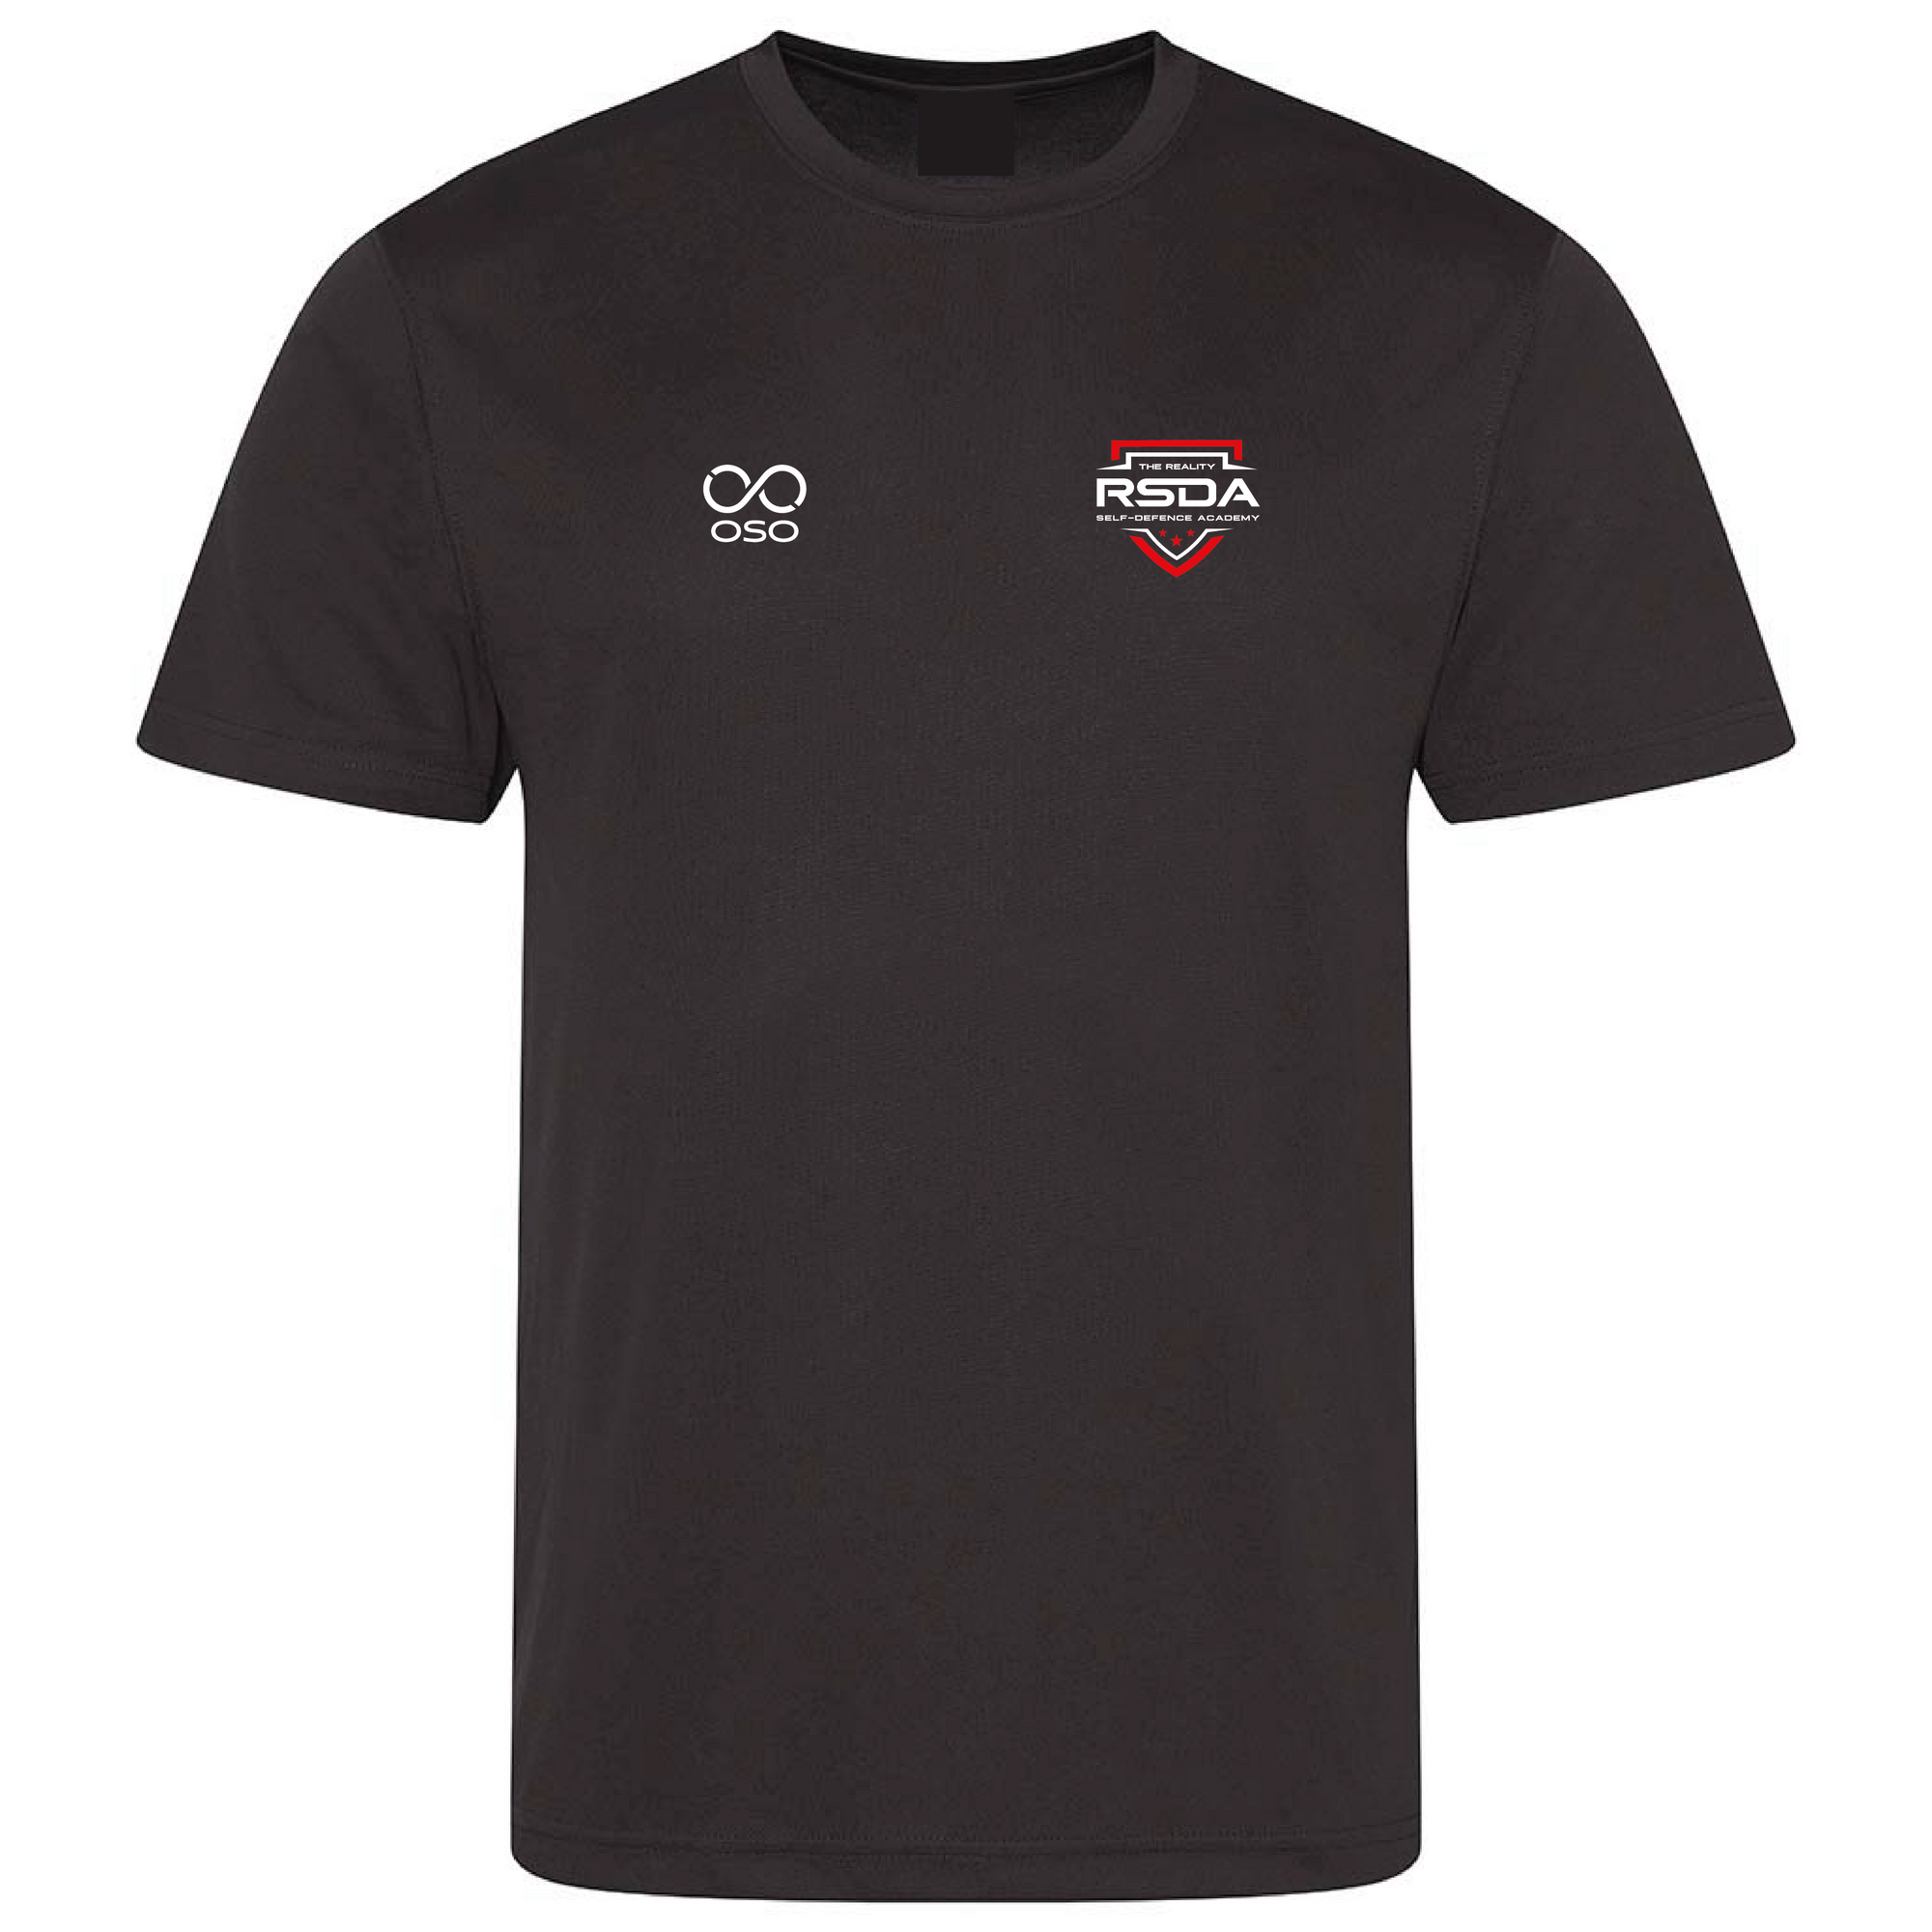 Krav Maga Sports T-shirt - Black